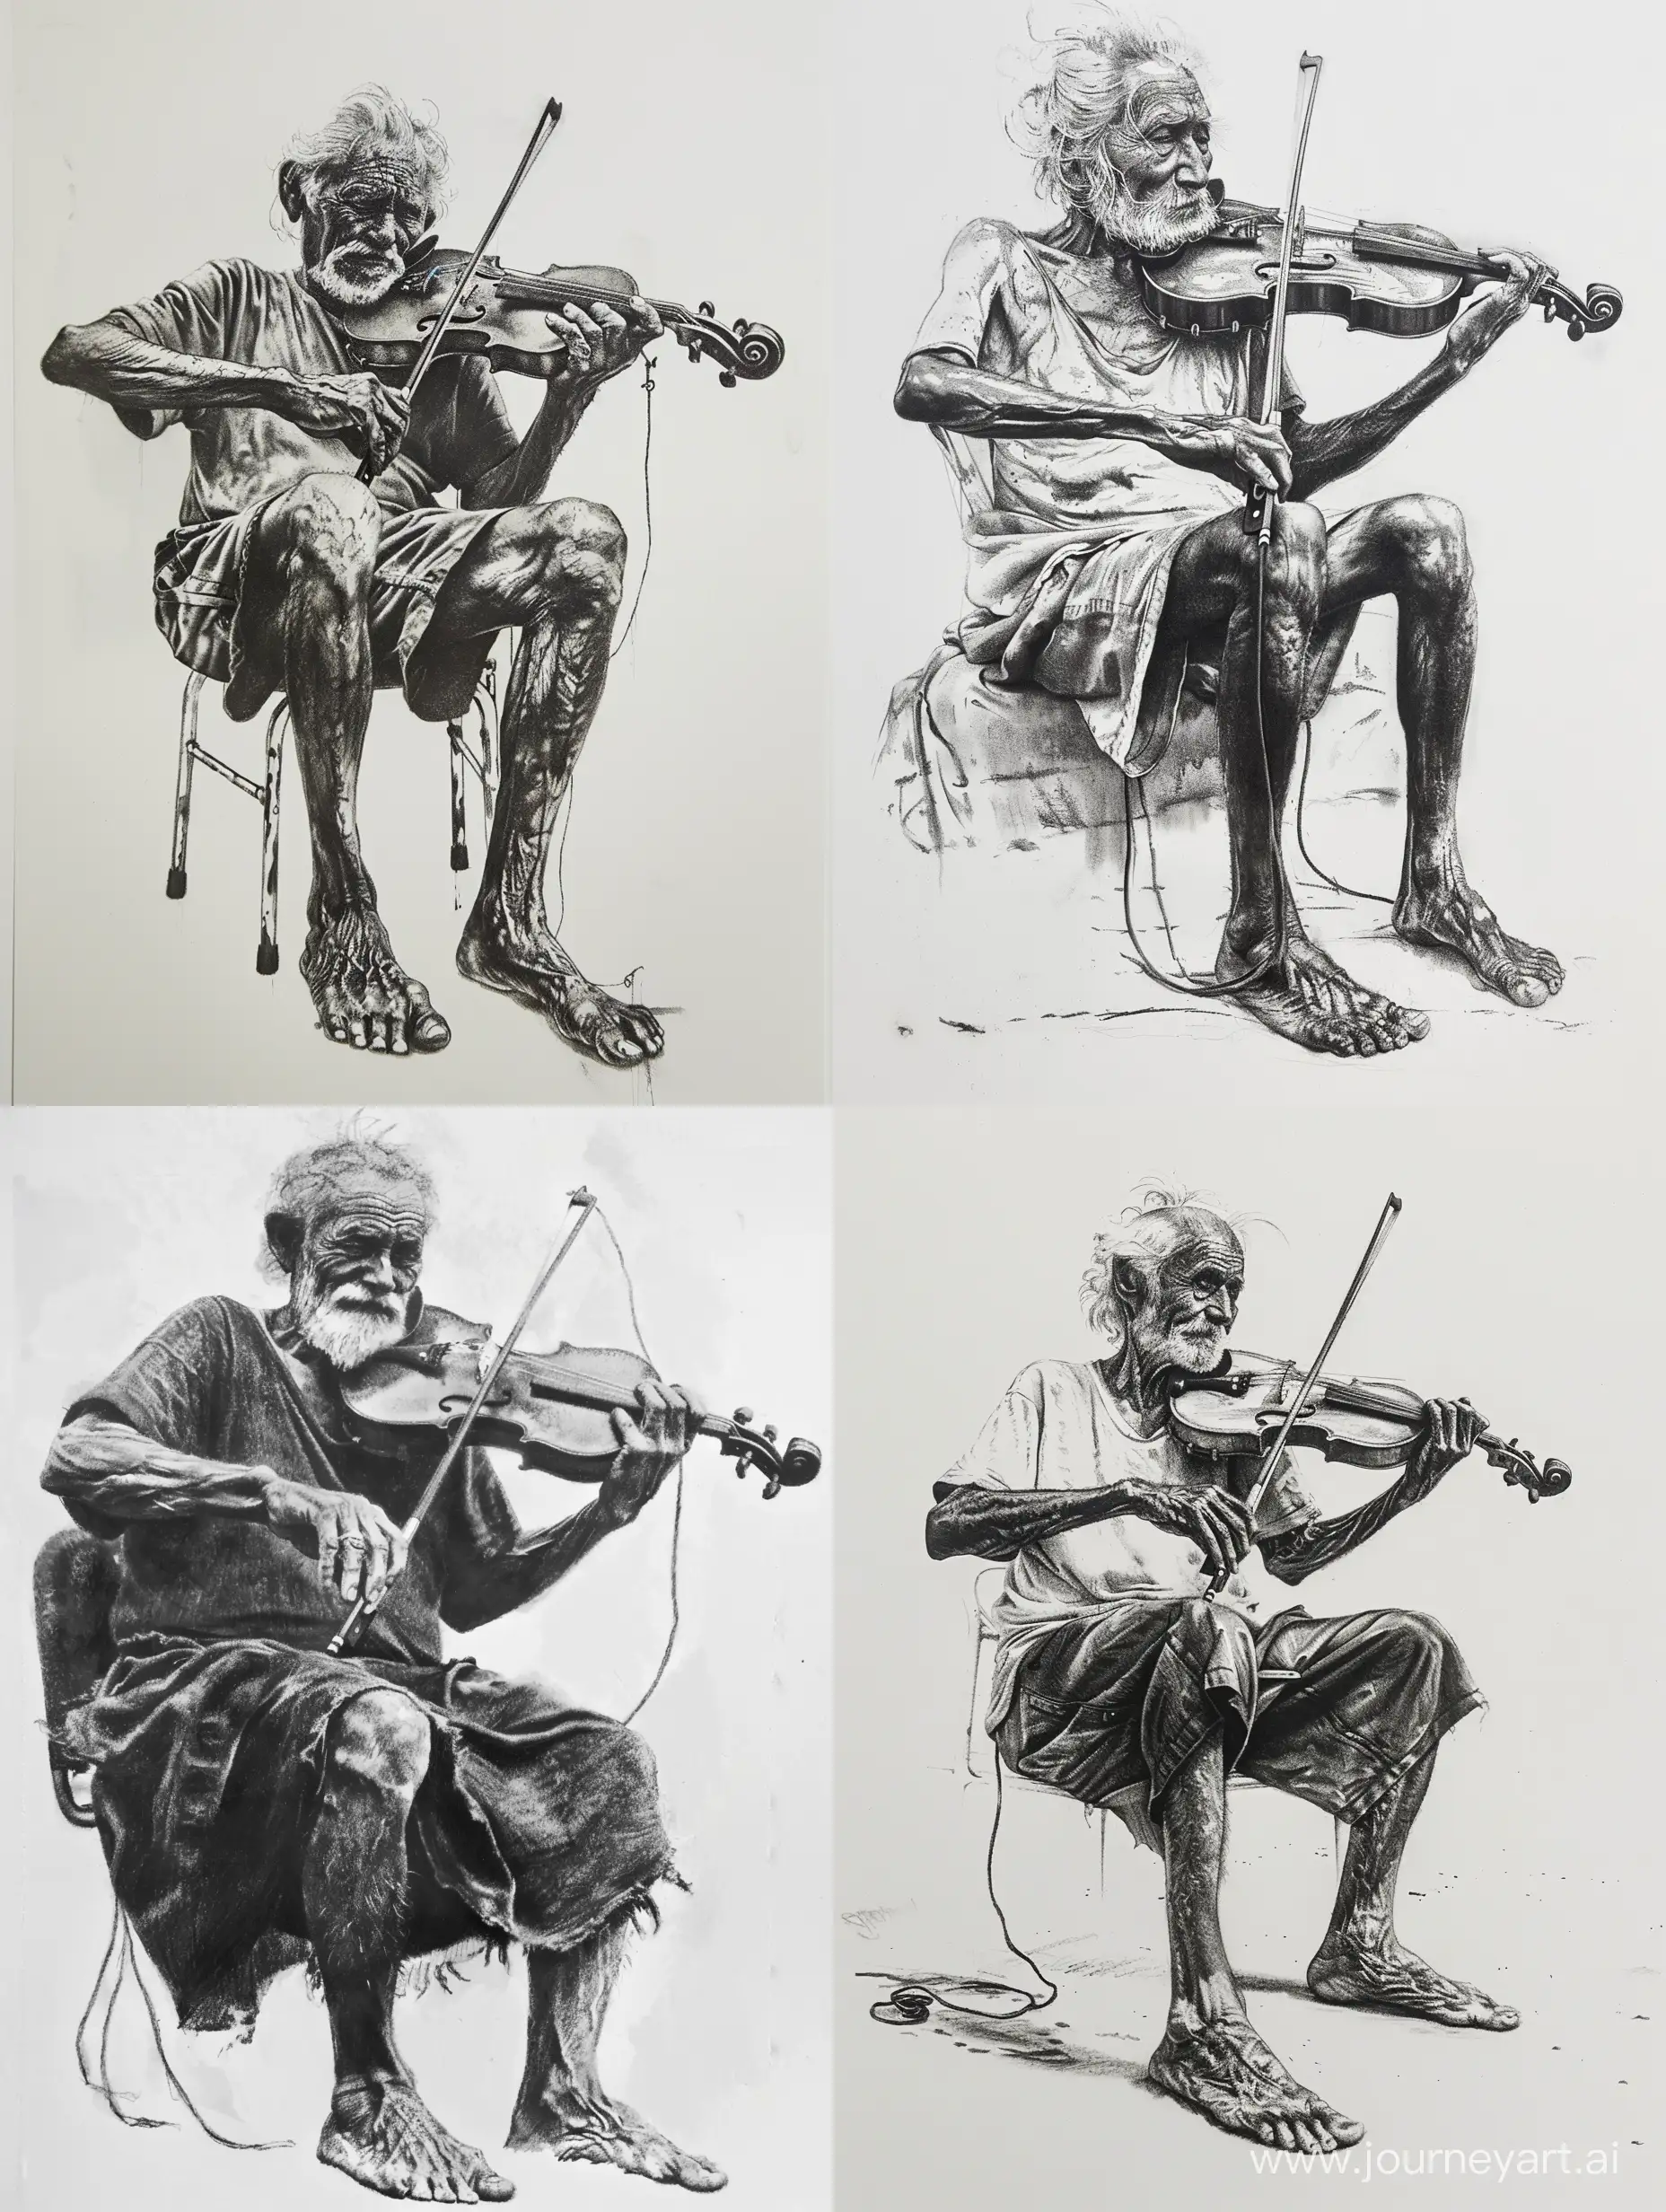 Рисунок углем на белой бумаге старик скрипач играет на скрипке. Босые ноги, бедная одежда. Ретро, винтаж